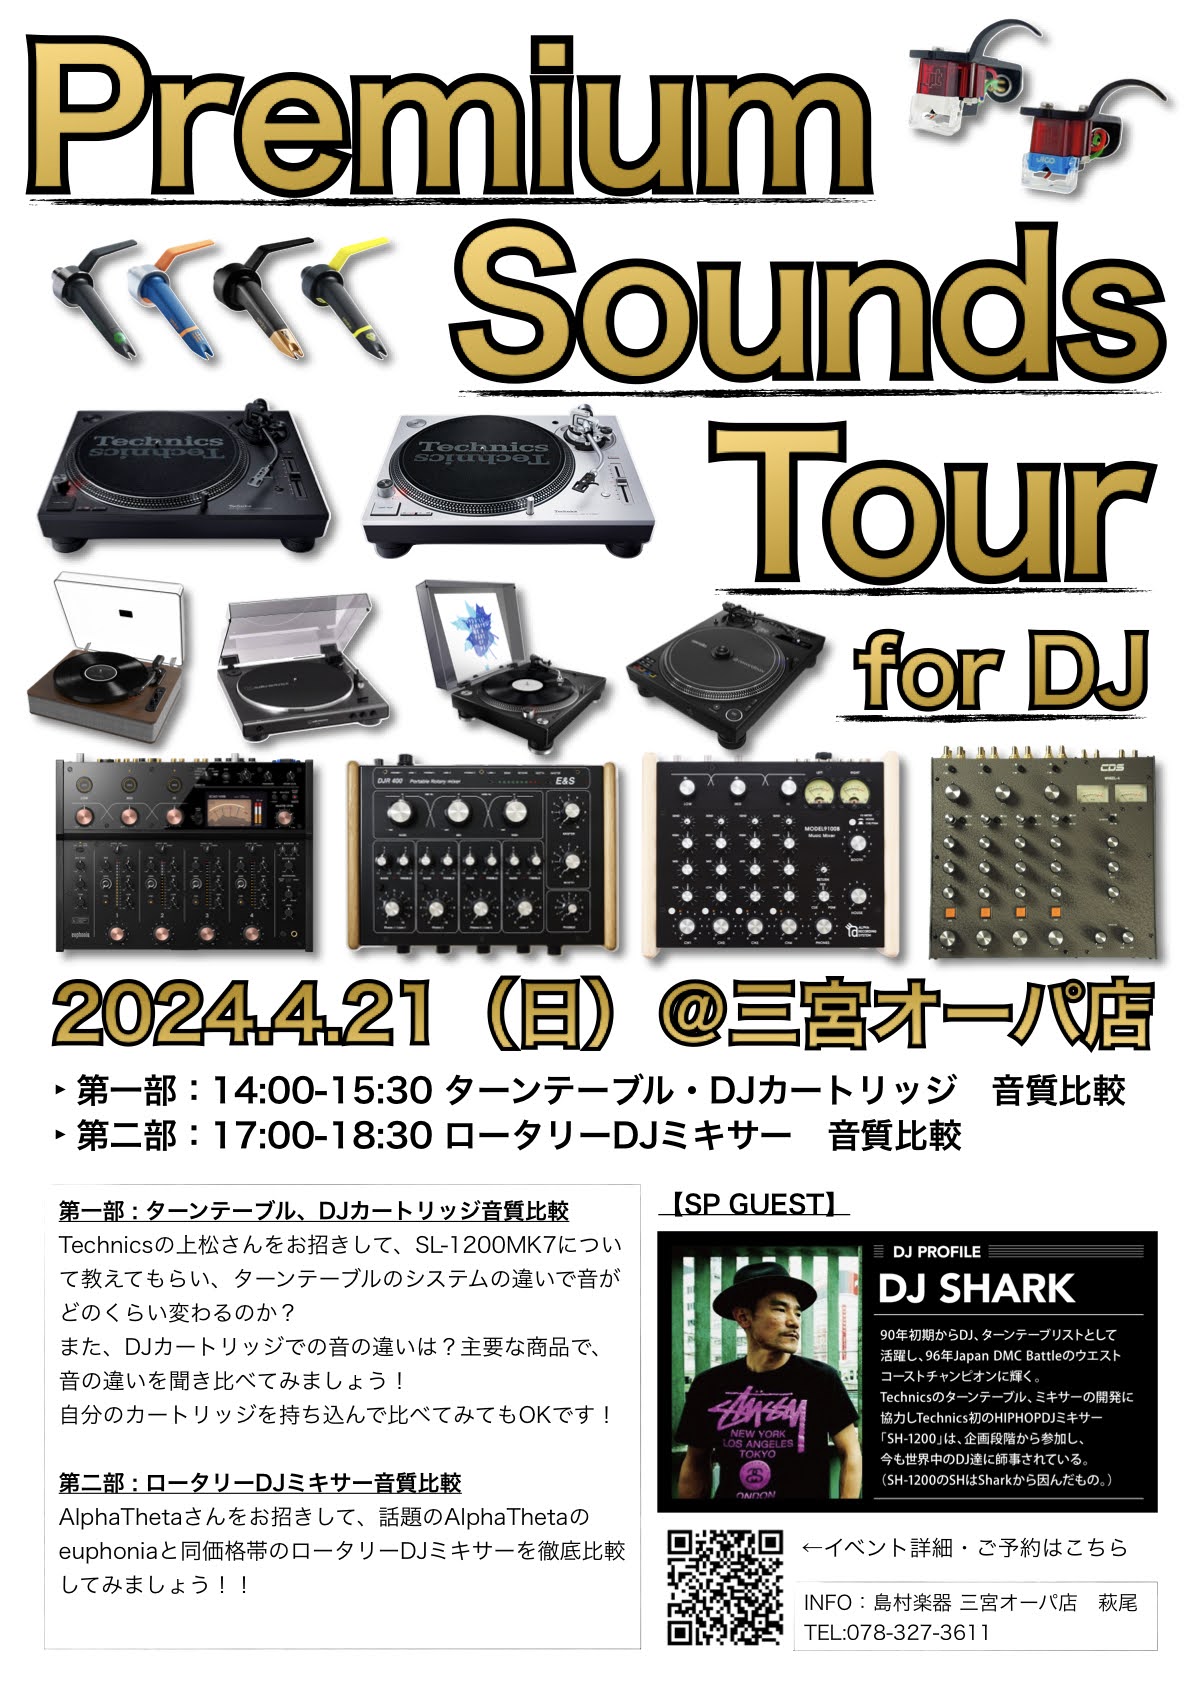 Premium Sounds Tour for DJ